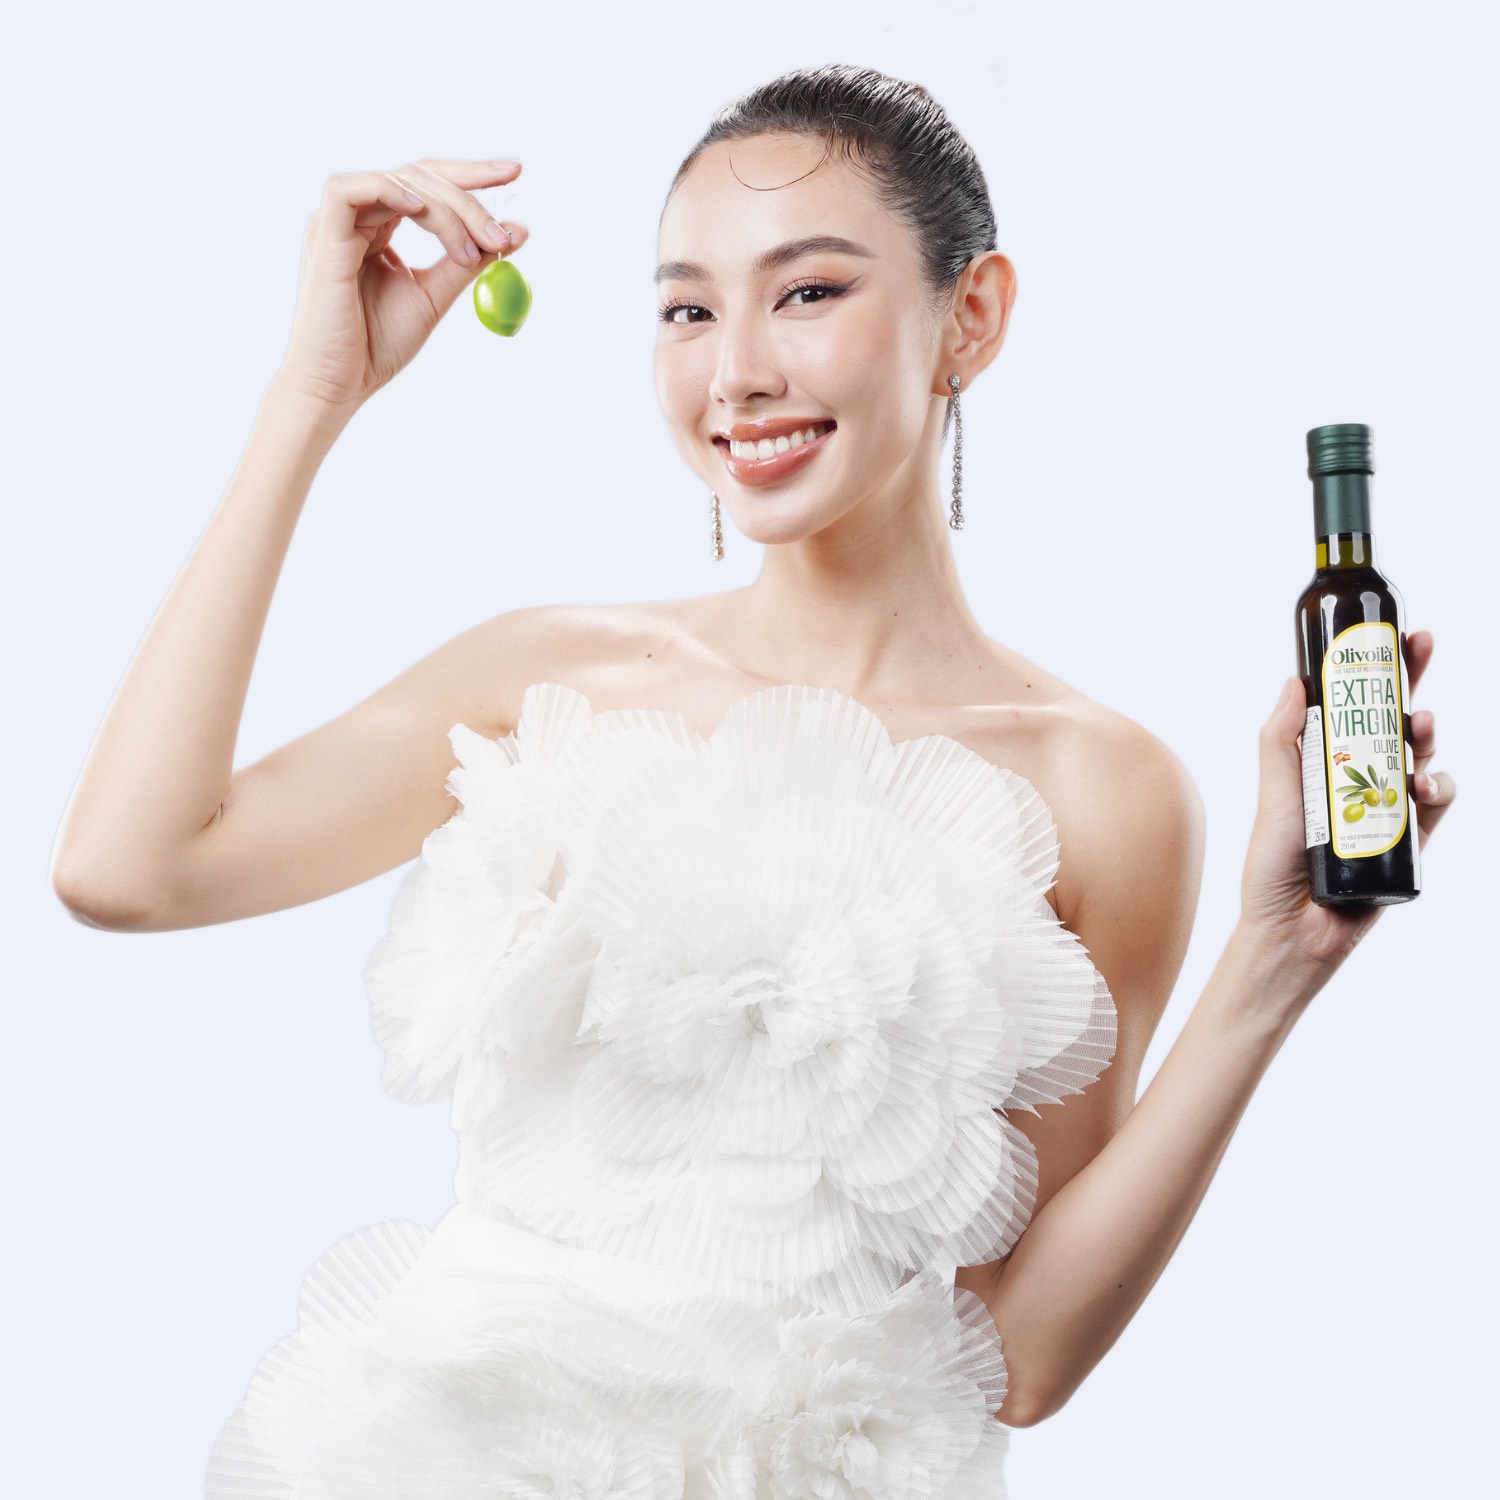 Trúc Nhân hóa quân sư bày Hoa hậu Thùy Tiên công thức sống khỏe - Ảnh 3.